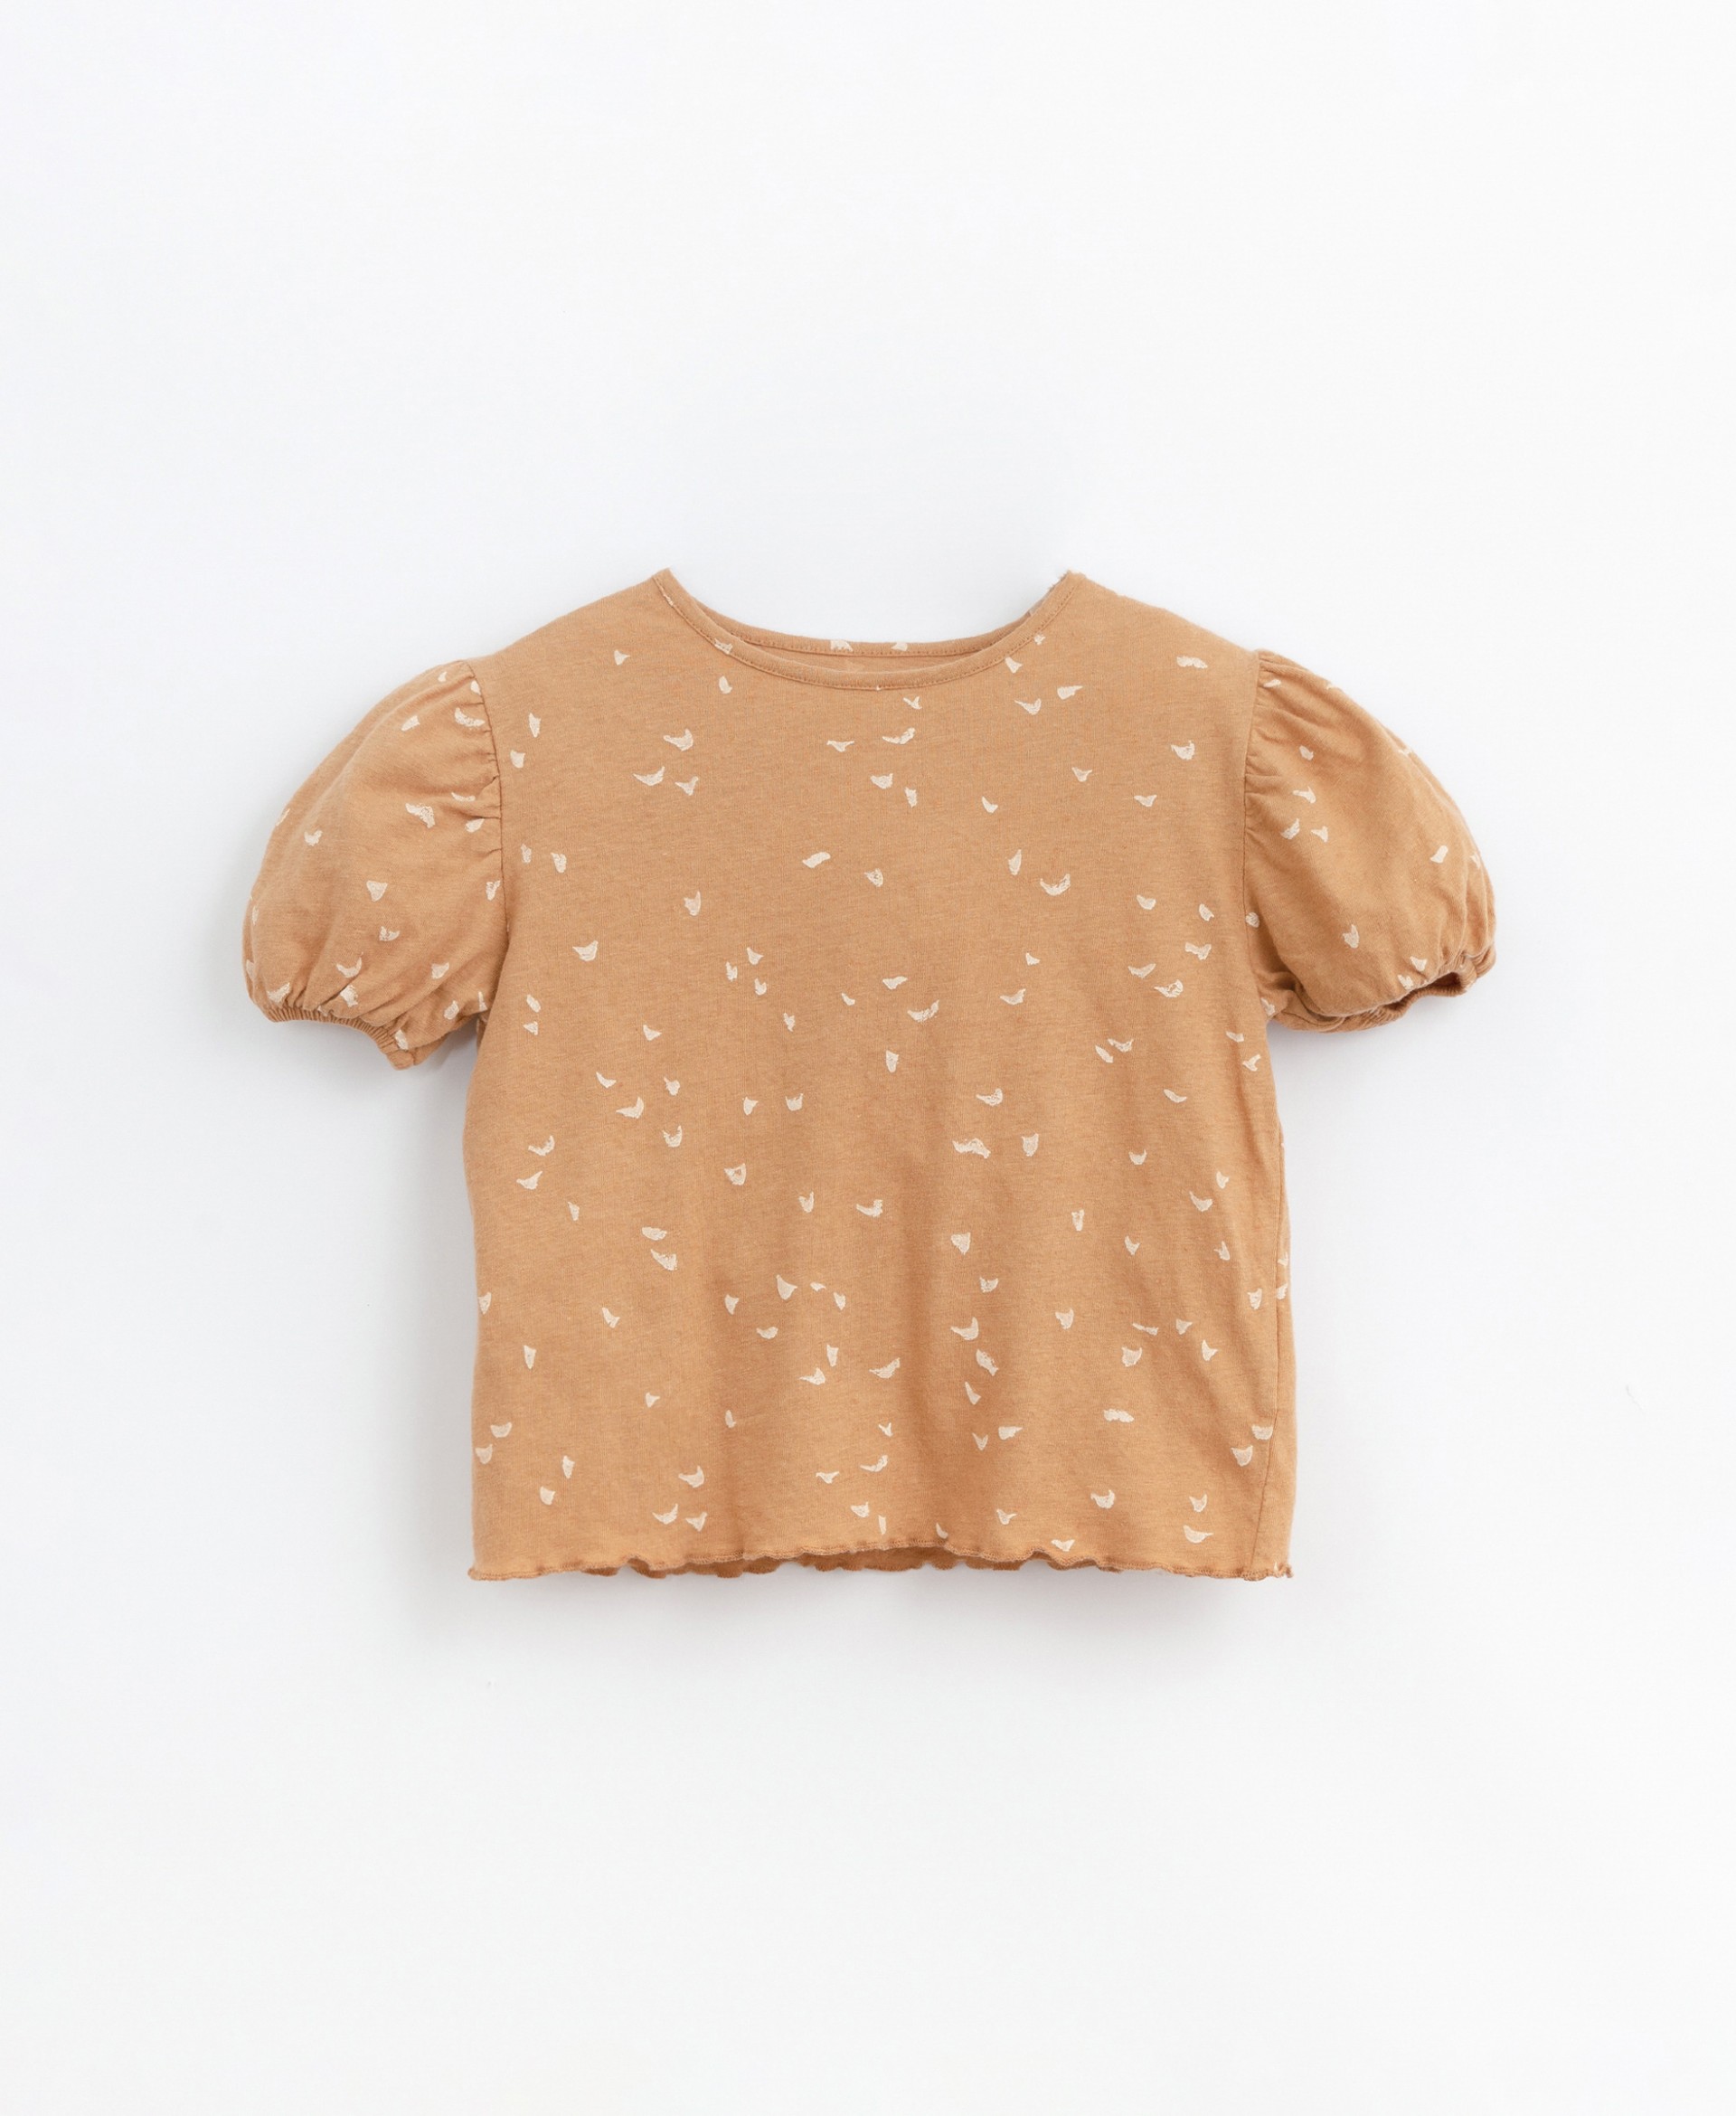 T-shirt com estampado em fibras naturais | Basketry